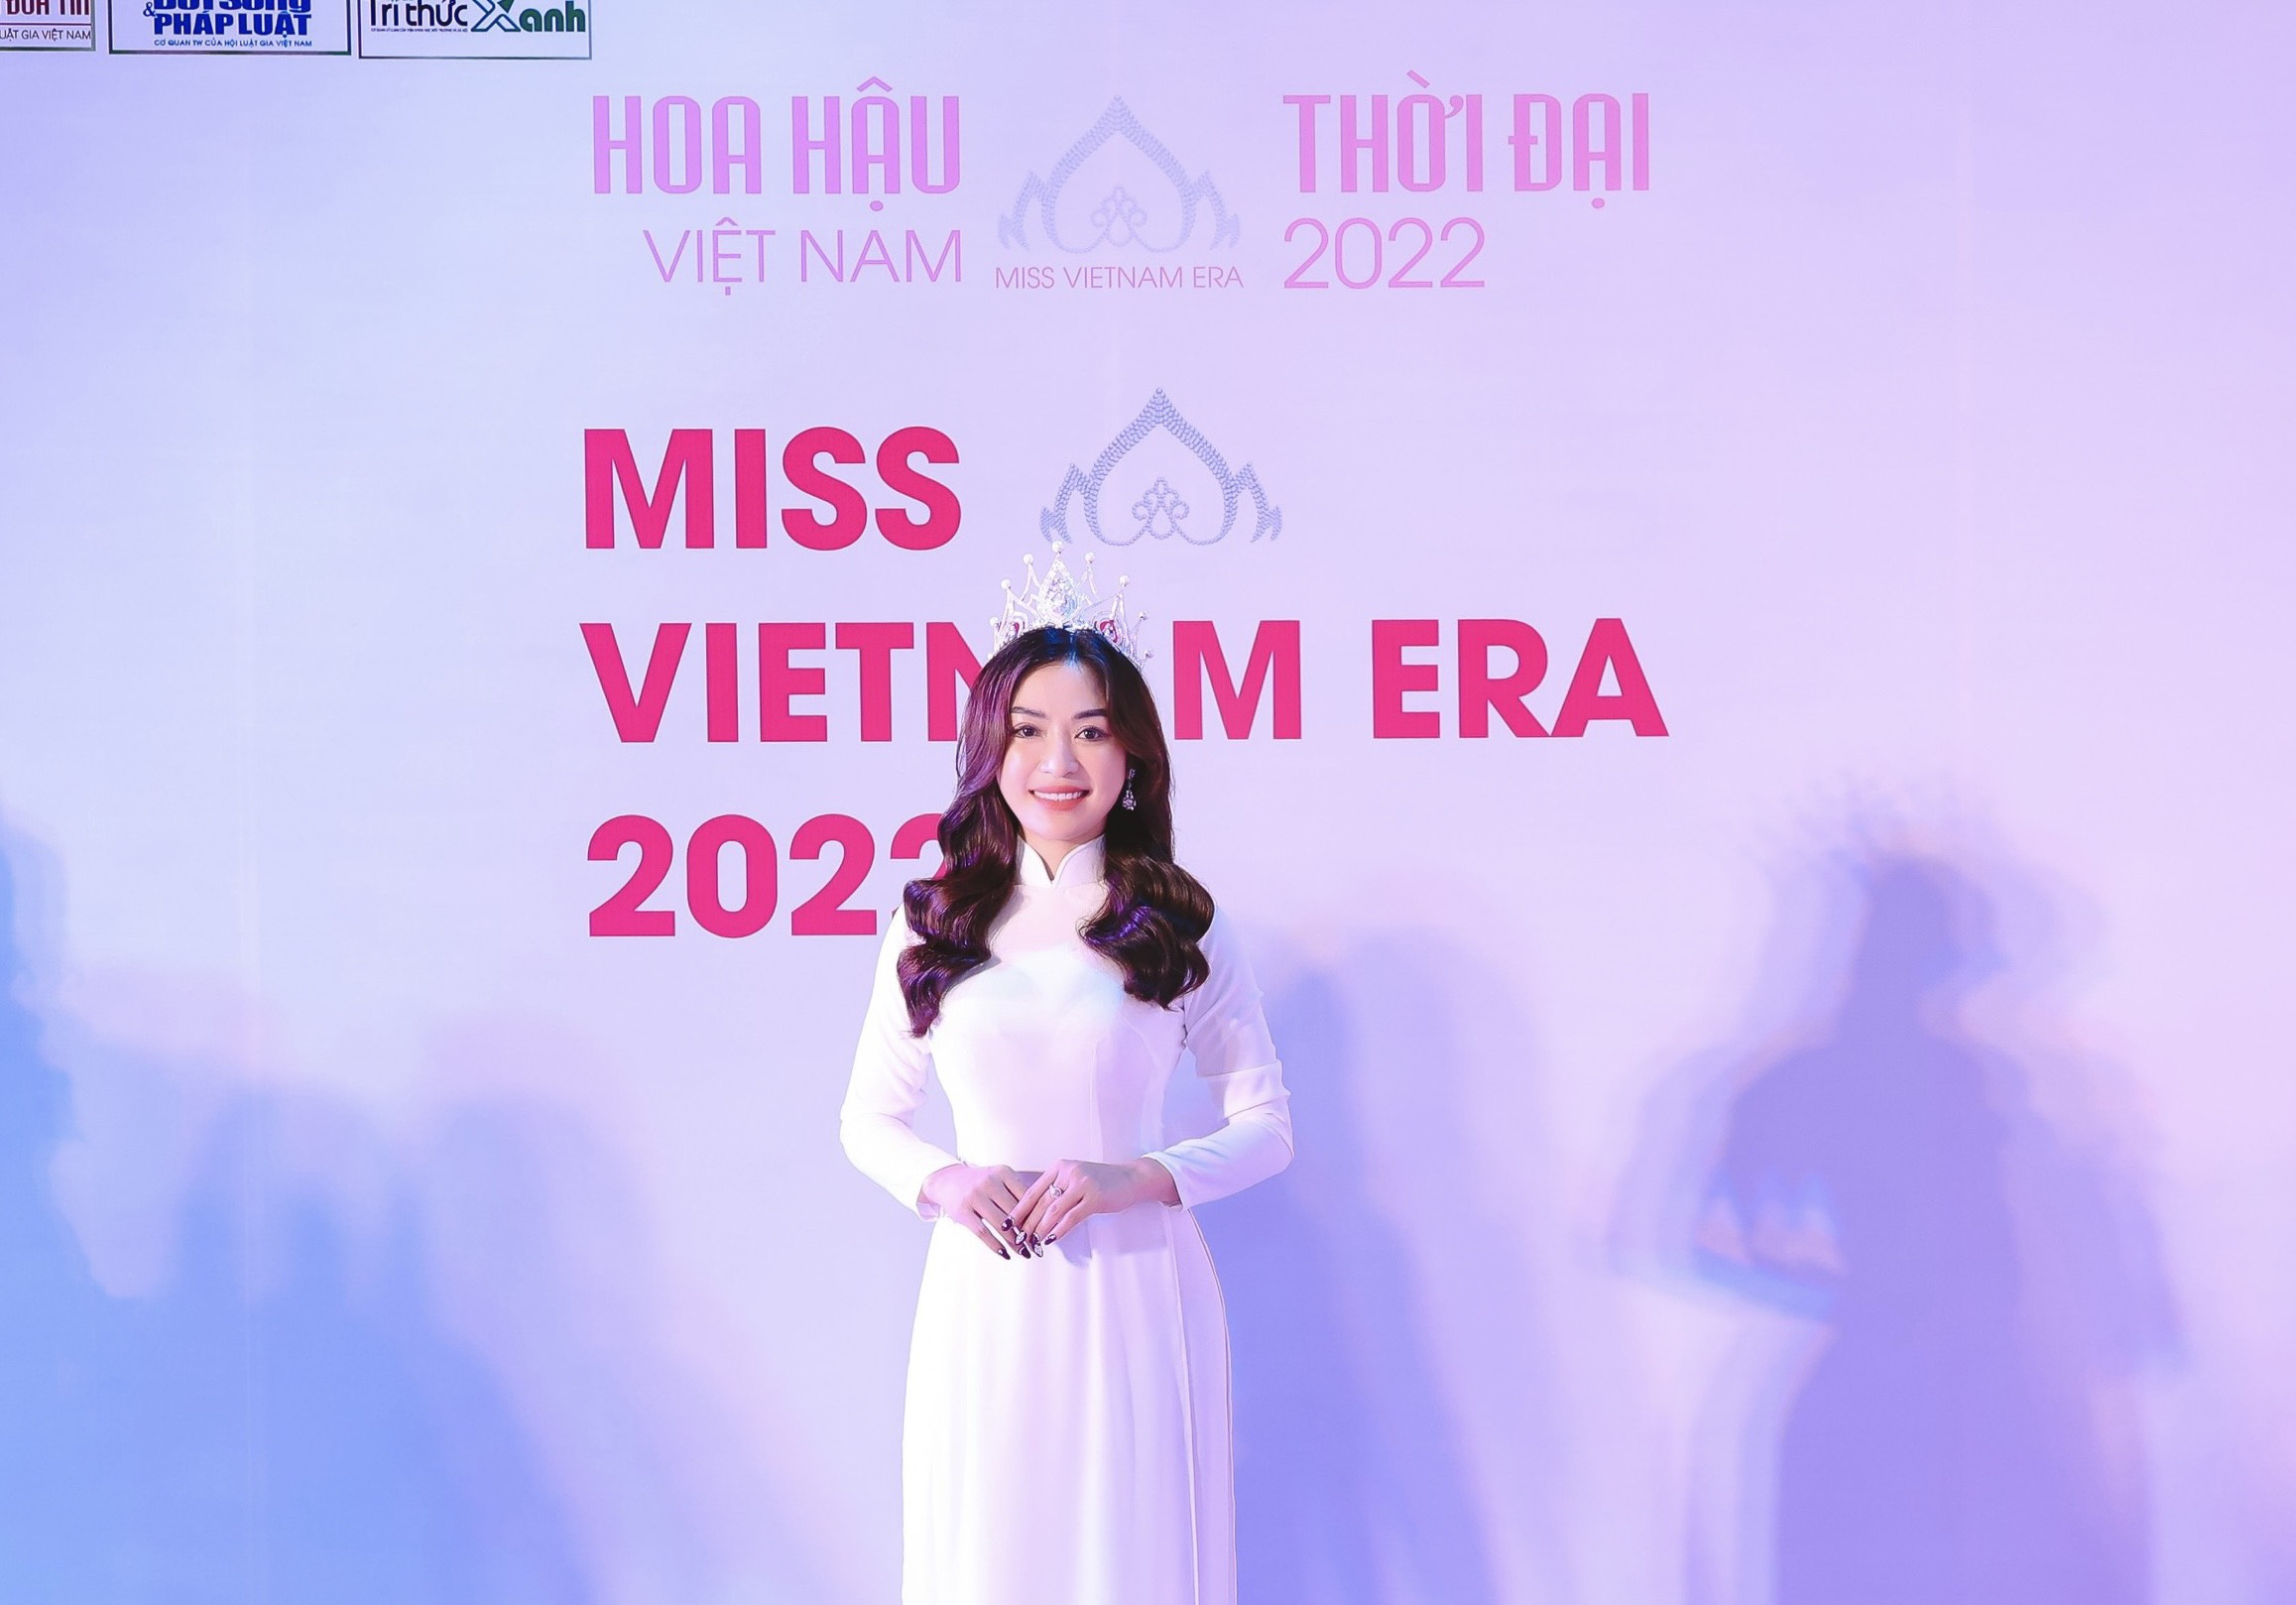 Hoa hậu Vũ Ngọc Anh ngồi ghế nóng casting “Hoa hậu Việt Nam Thời đại 2022”